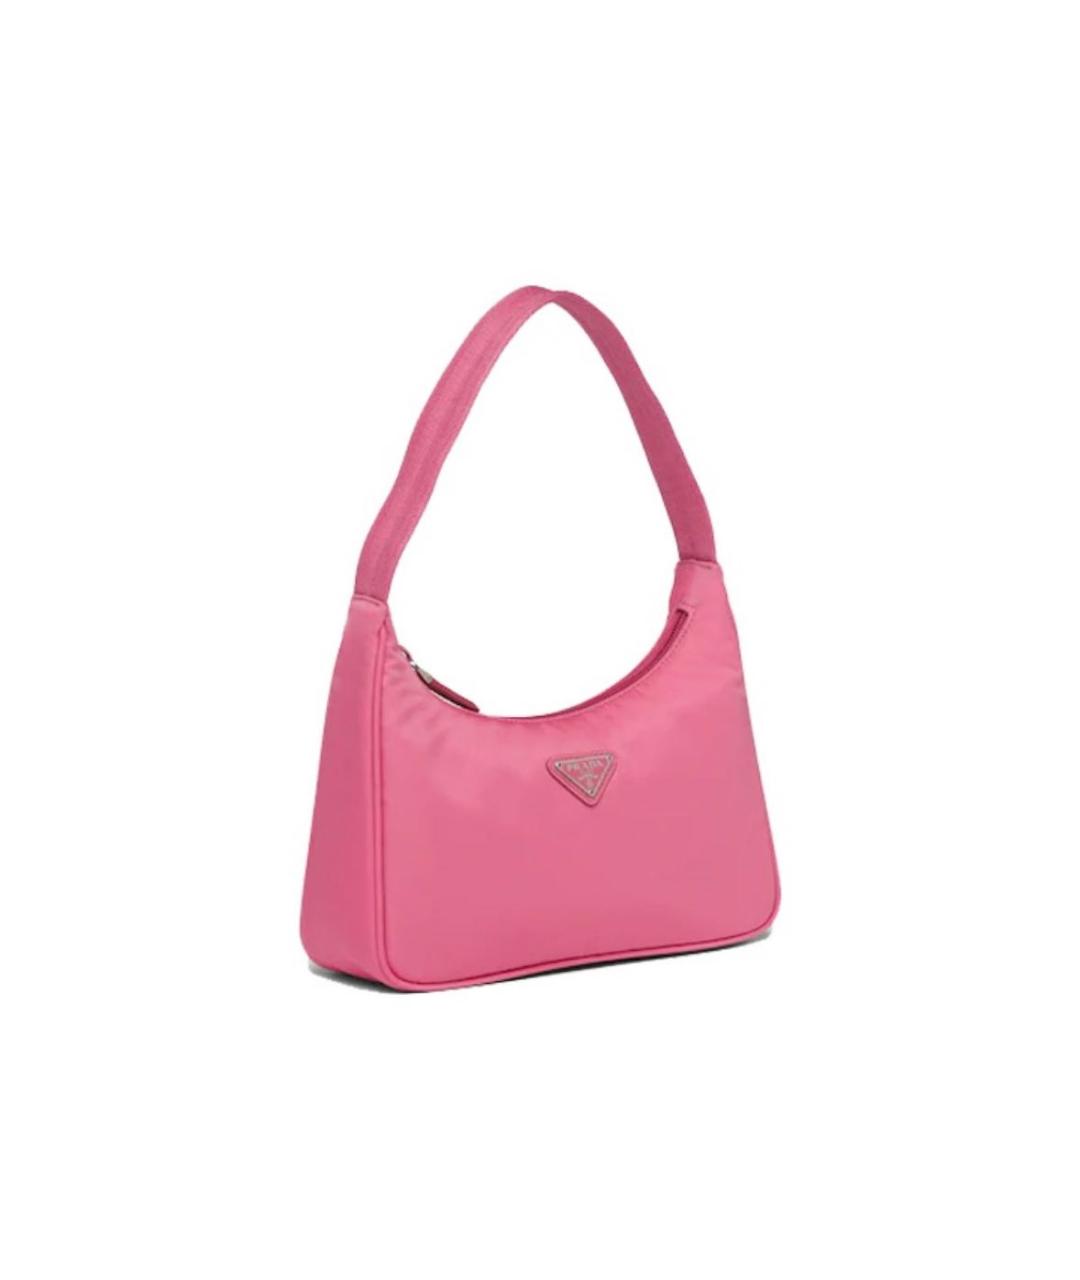 PRADA Розовая кожаная сумка с короткими ручками, фото 2